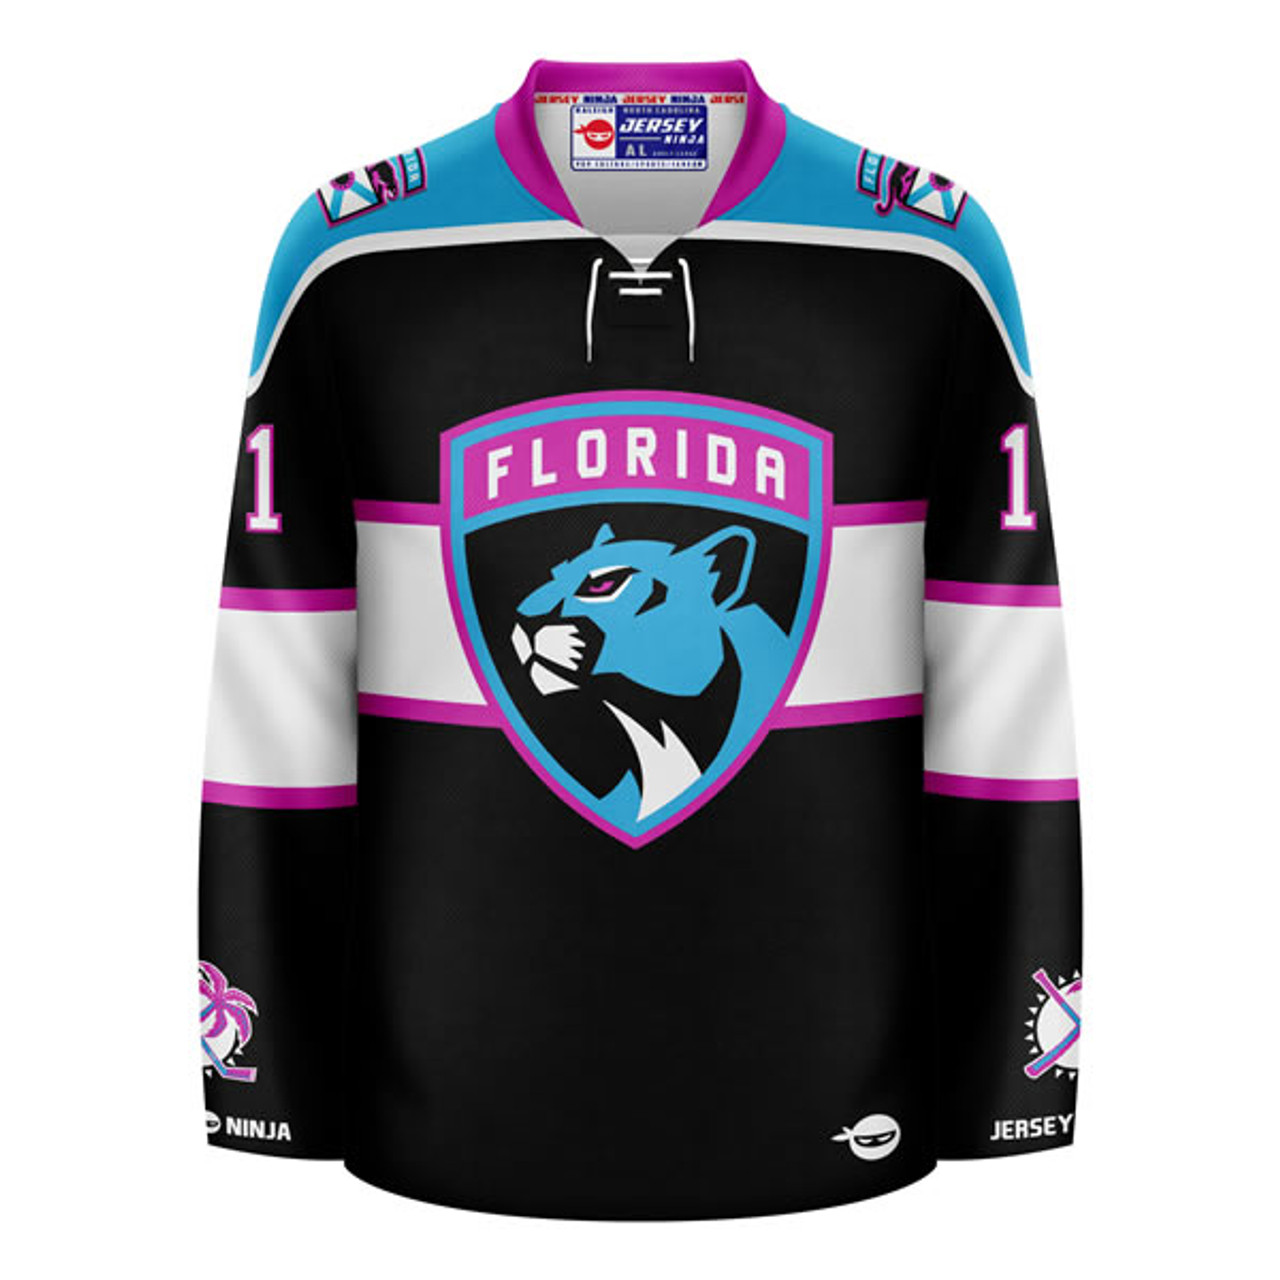 Florida Panthers x Miami Vice Alternate Jersey *CONCEPT* : r/FloridaPanthers